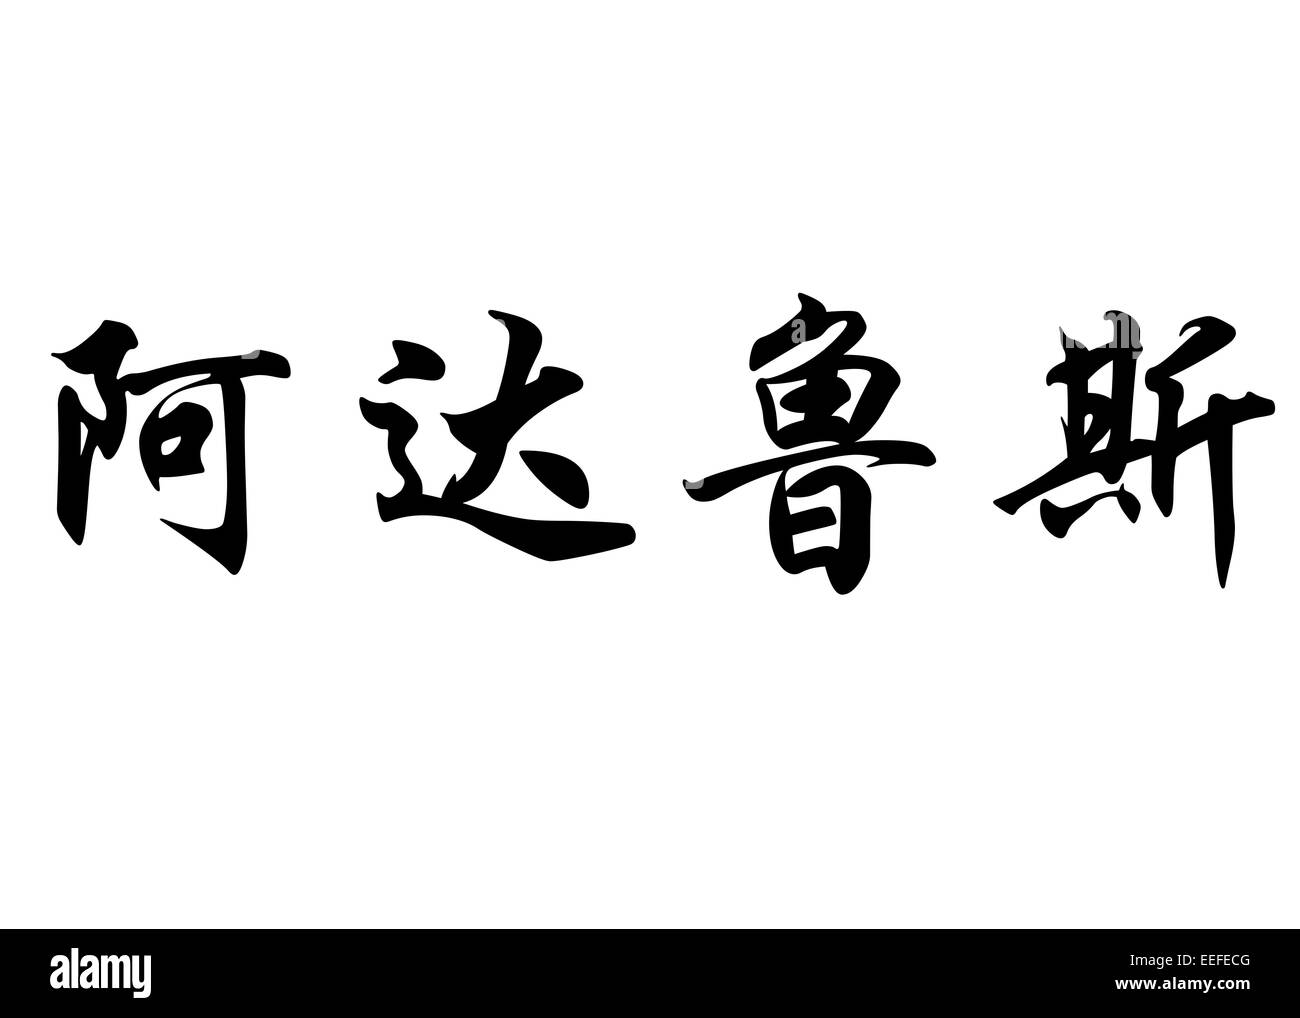 Nom anglais Adaluz en calligraphie chinoise caractères kanji ou caractères japonais Banque D'Images